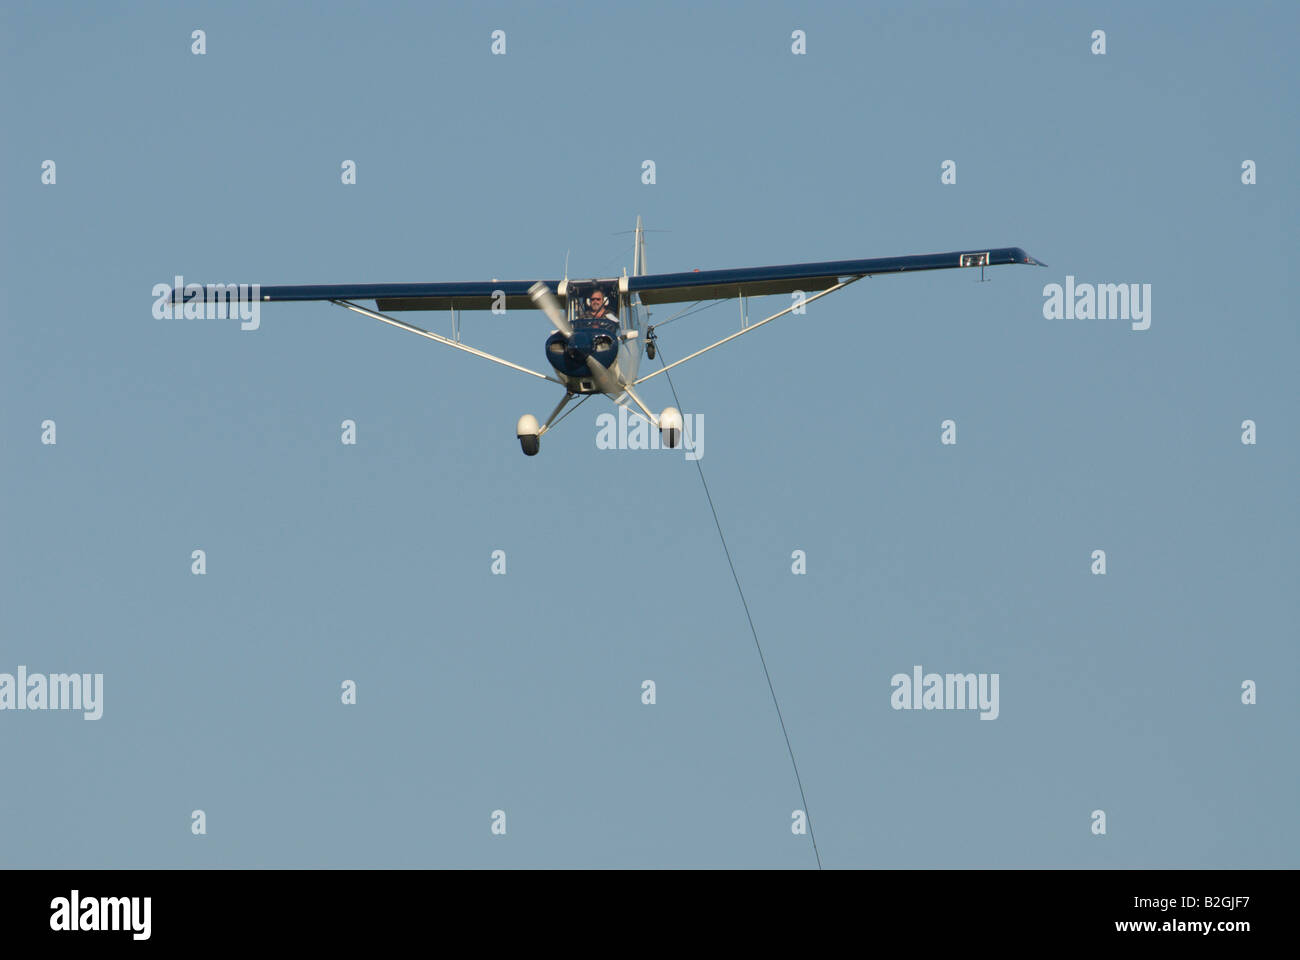 Endanflug Landung Flug Flugzeug Flugverkehr Handwerk Stockfoto